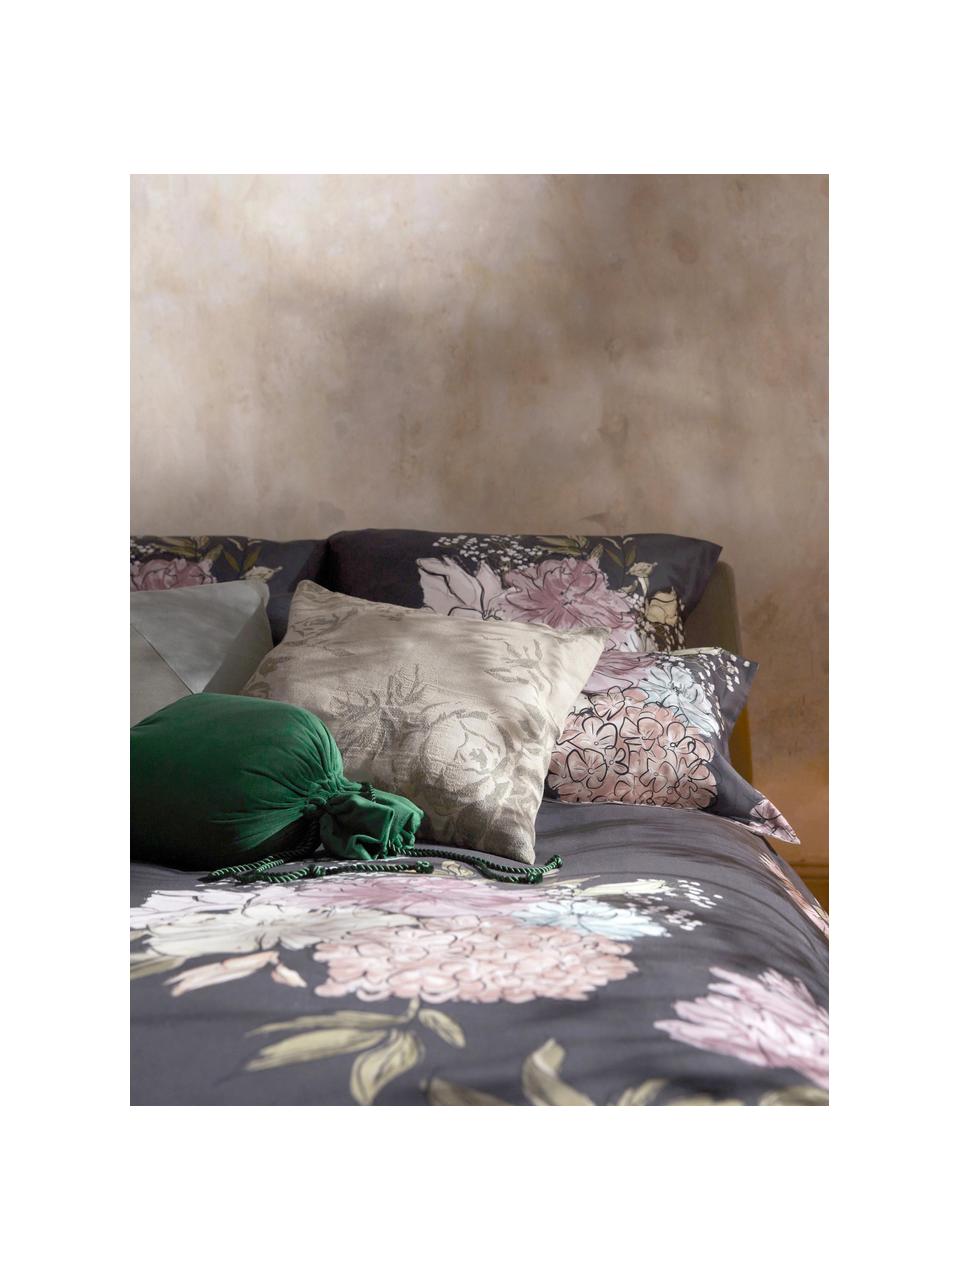 Poszewka na poduszkę z bawełny Breight, 100% bawełna, Jasny beżowy, brązowy, S 50 x D 50 cm